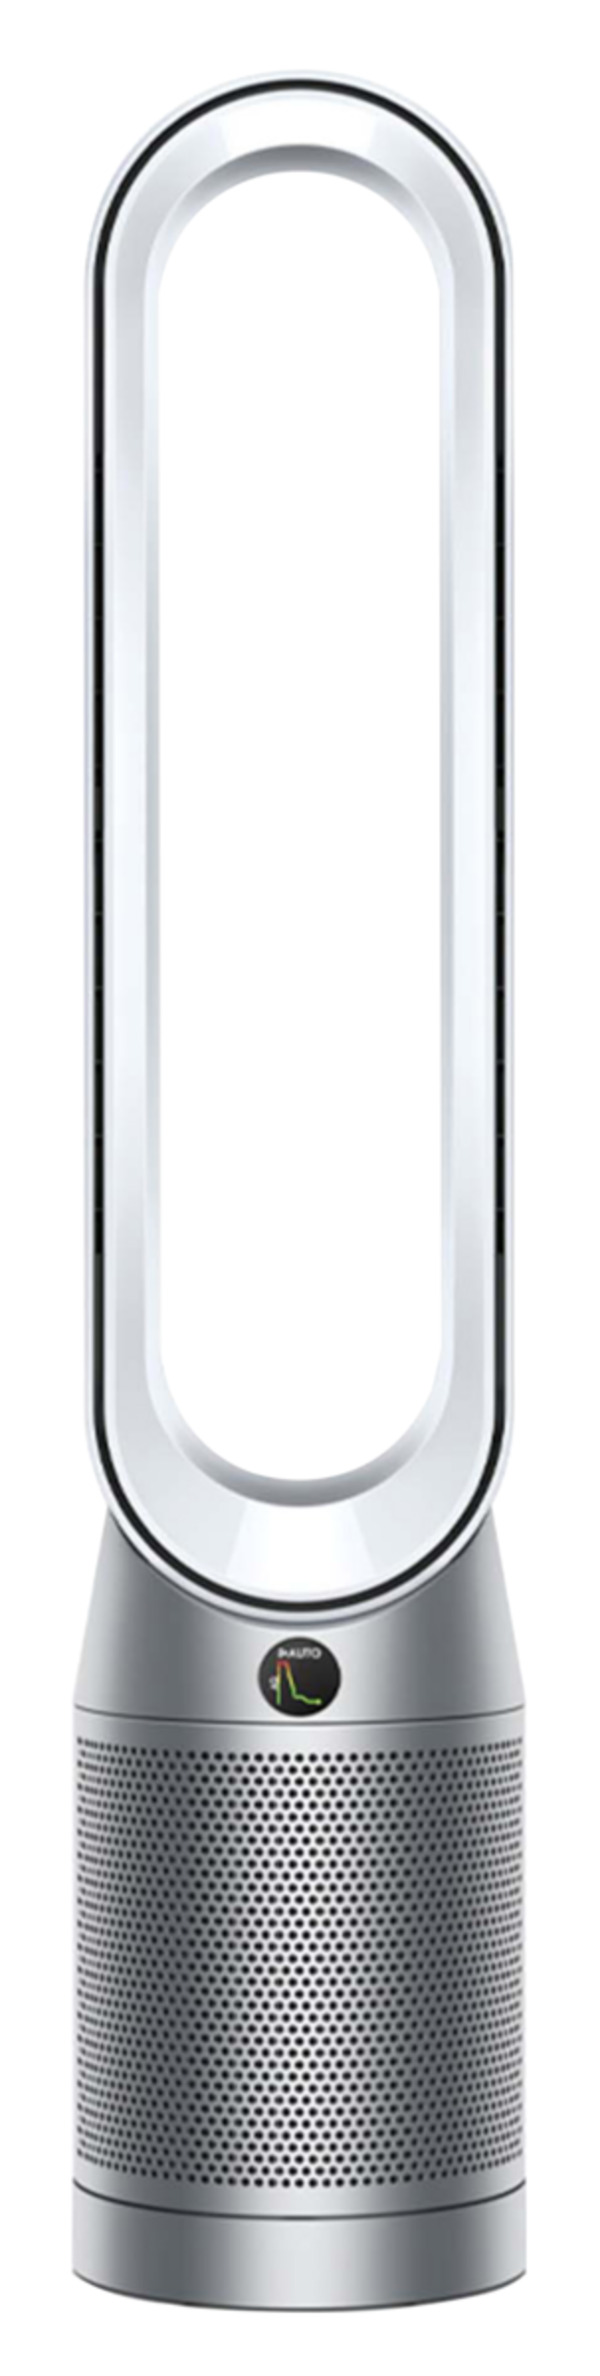 Bild 1 von DYSON TP7A PURIFIER COOL AUTOREACT Luftreiniger Weiß/Nickel (40 Watt, Raumgröße: 0 m³, HEPA-13 Filter mit Fasern aus Borosilikatglas, Aktivkohlefilter)